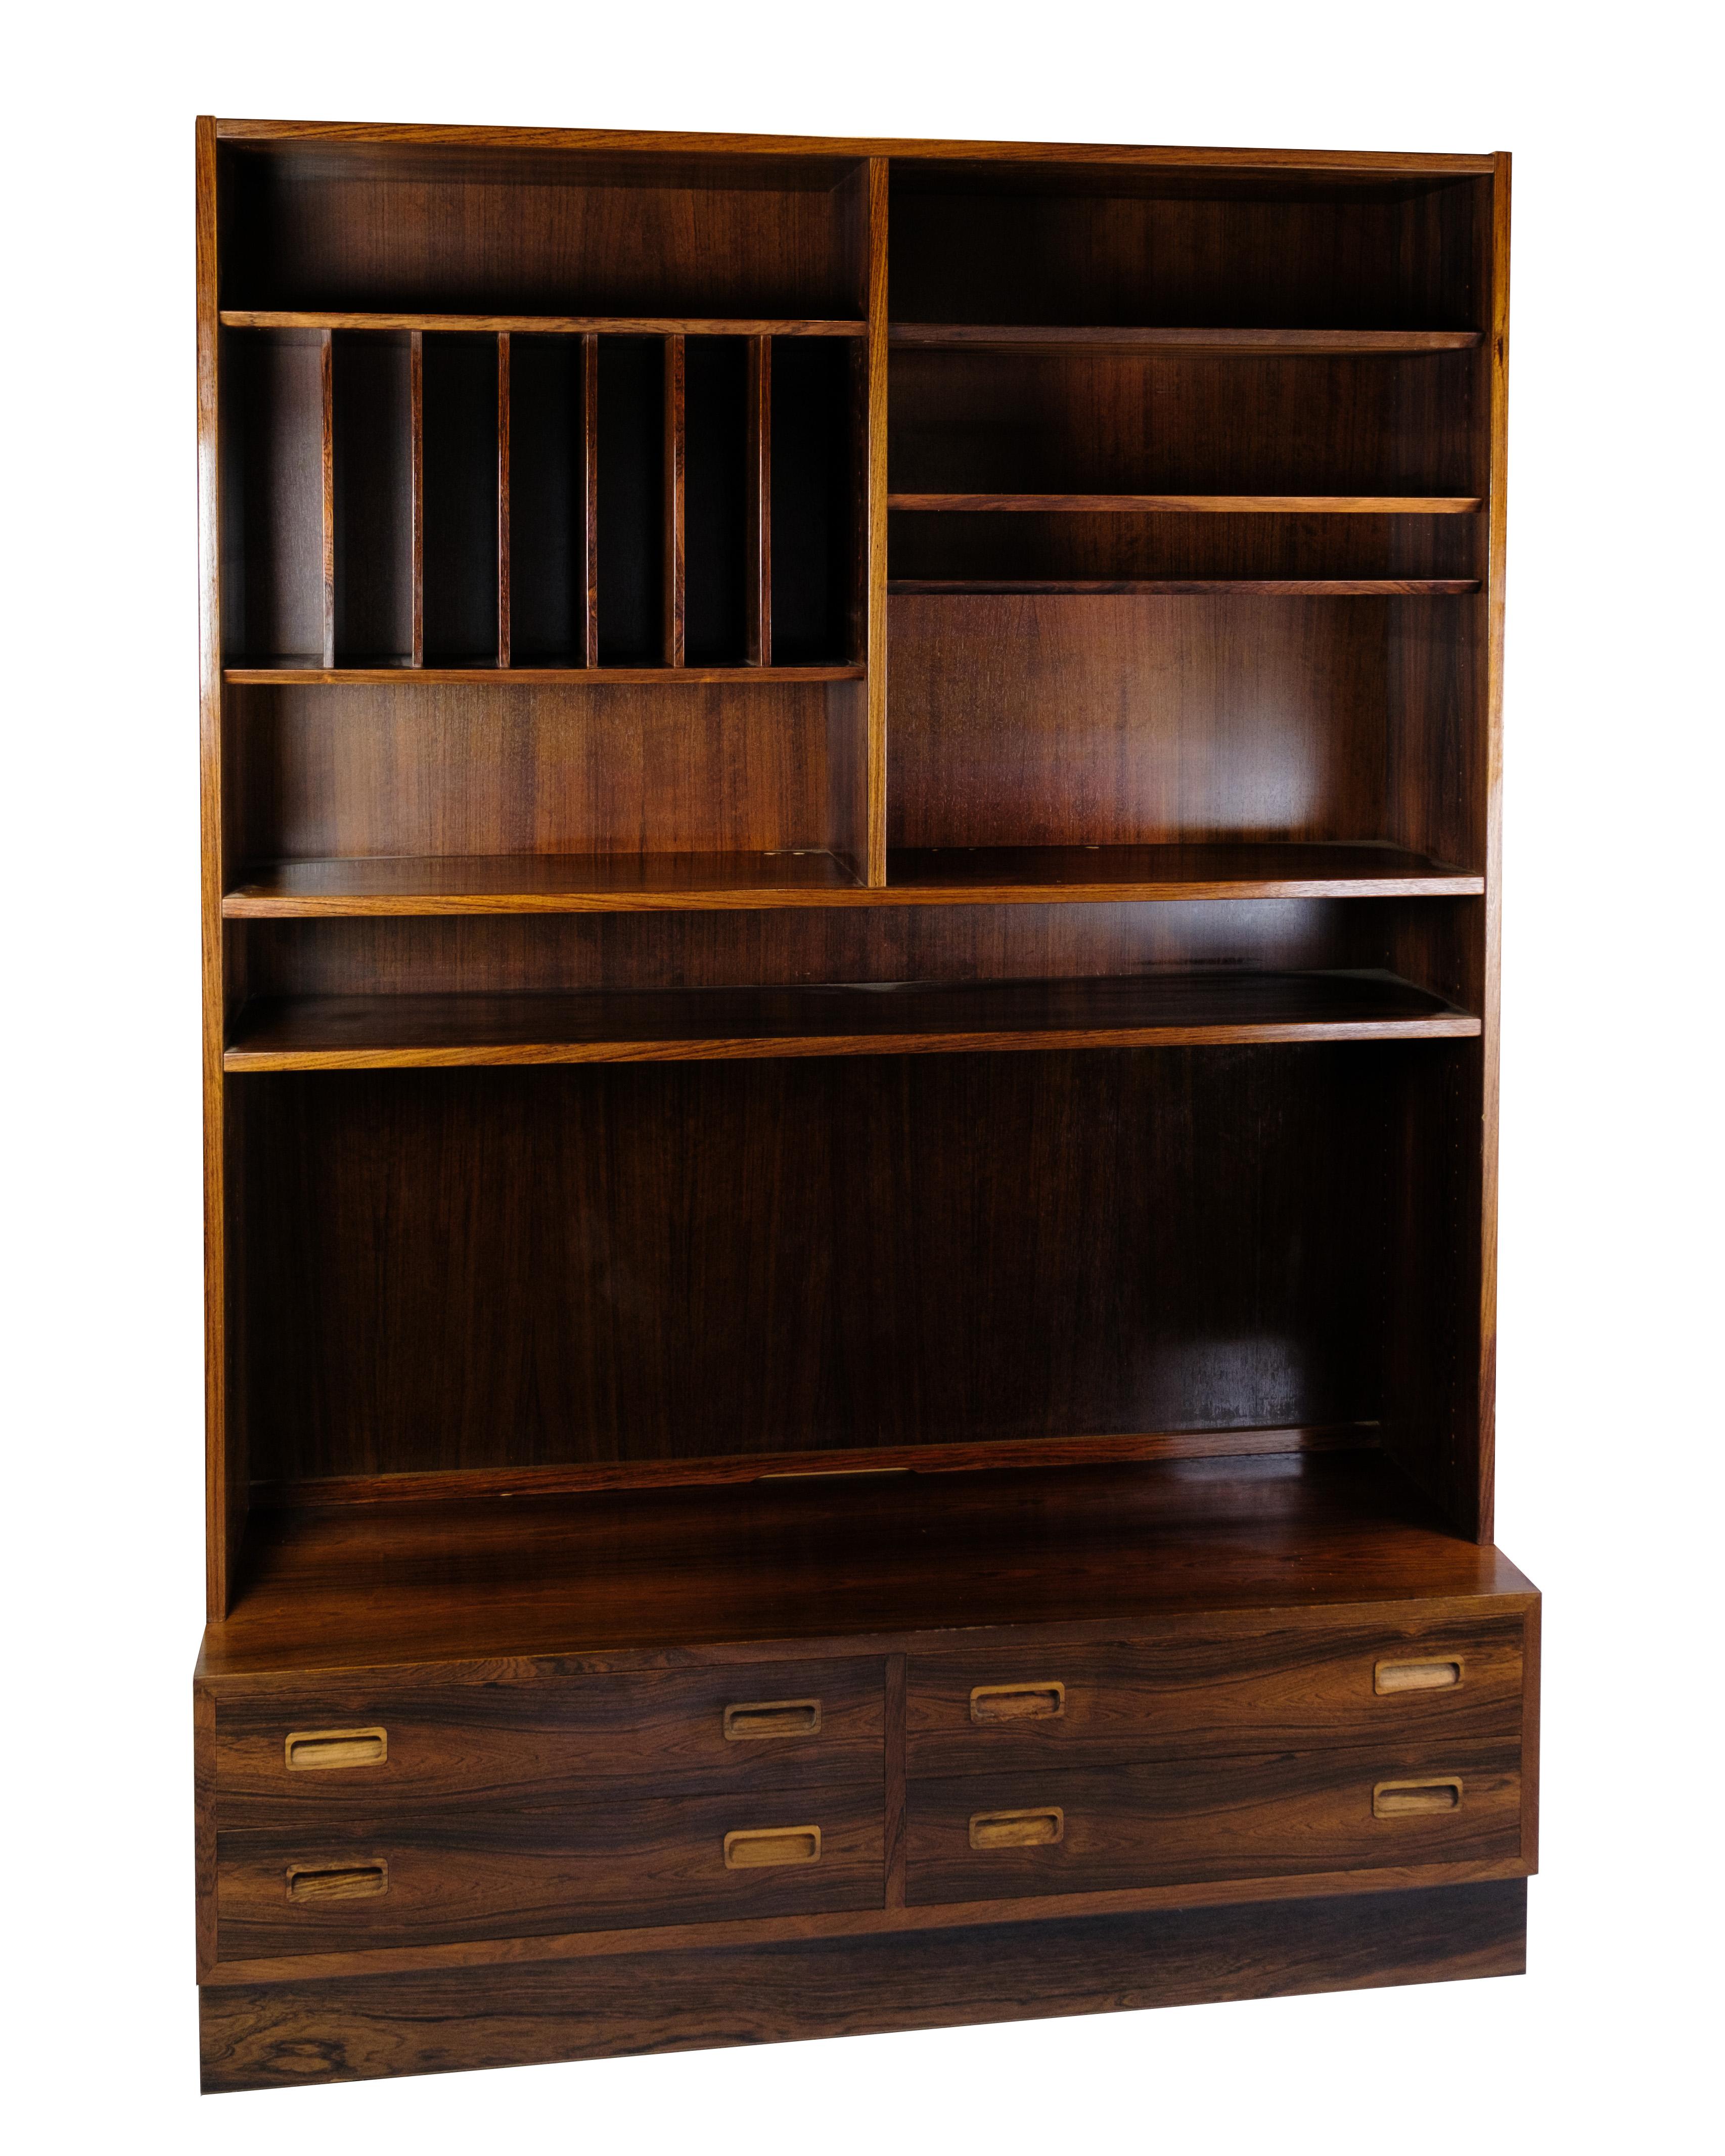 Dieses Bücherregal ist ein elegantes Beispiel für dänisches Design aus den 1960er Jahren, hergestellt von Hundevad Møbelfabrik. Dieses aus Palisanderholz gefertigte Bücherregal strahlt eine zeitlose Schönheit und Schlichtheit aus, die perfekt zu